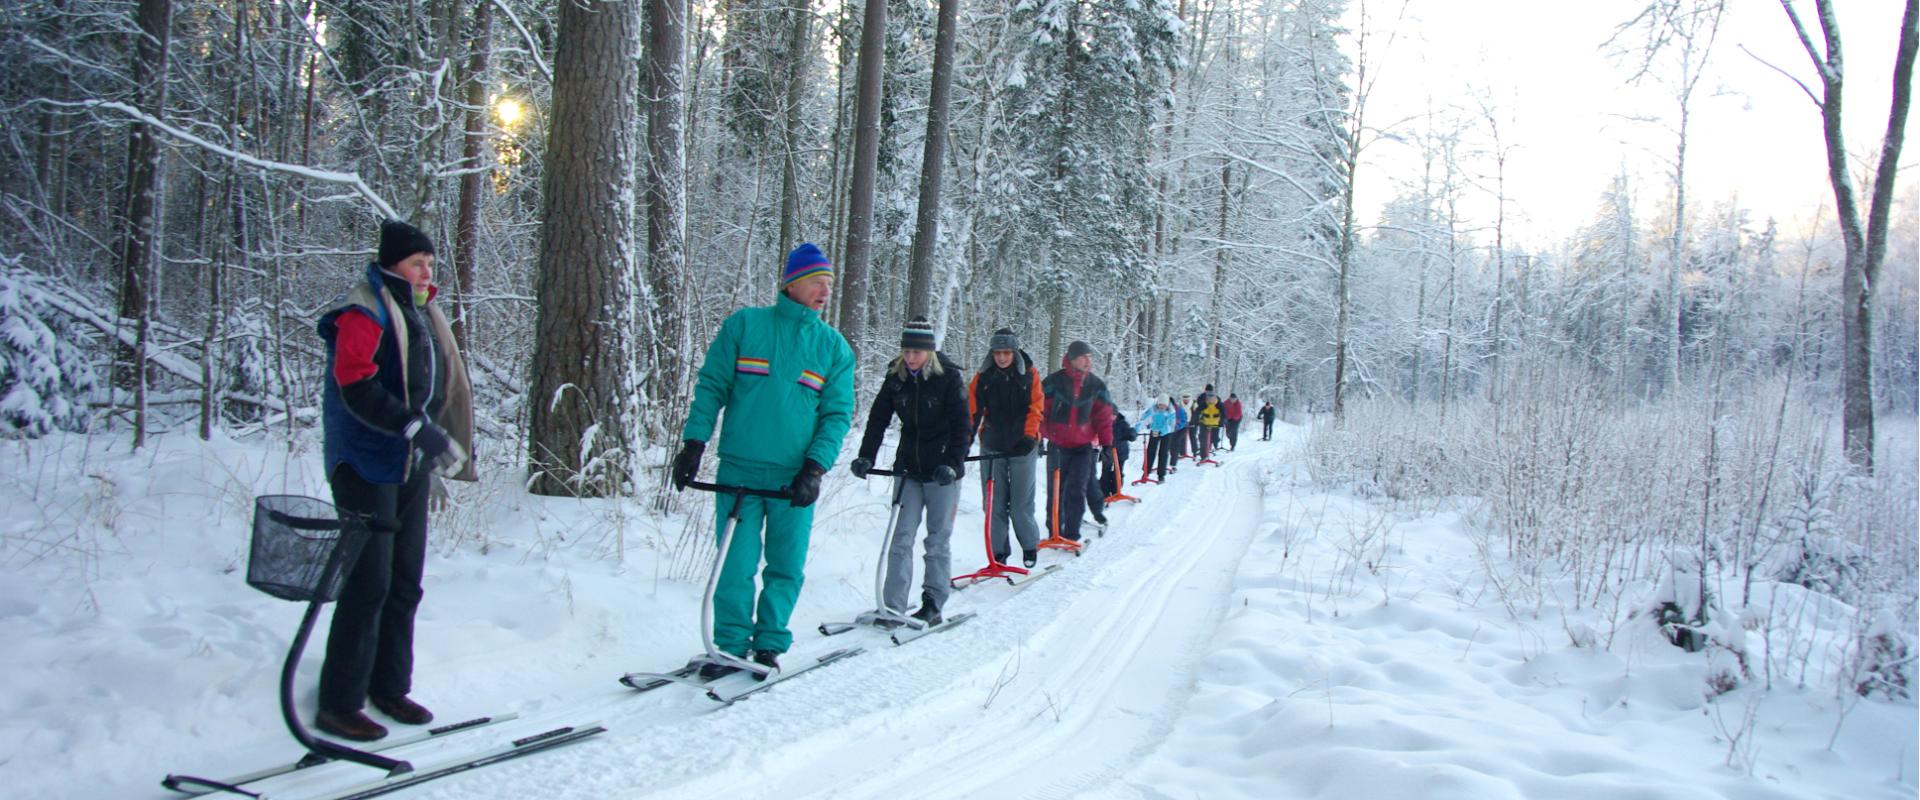 Kick sledge hike on the ice of Lake Pühajärv or along the sports tracks